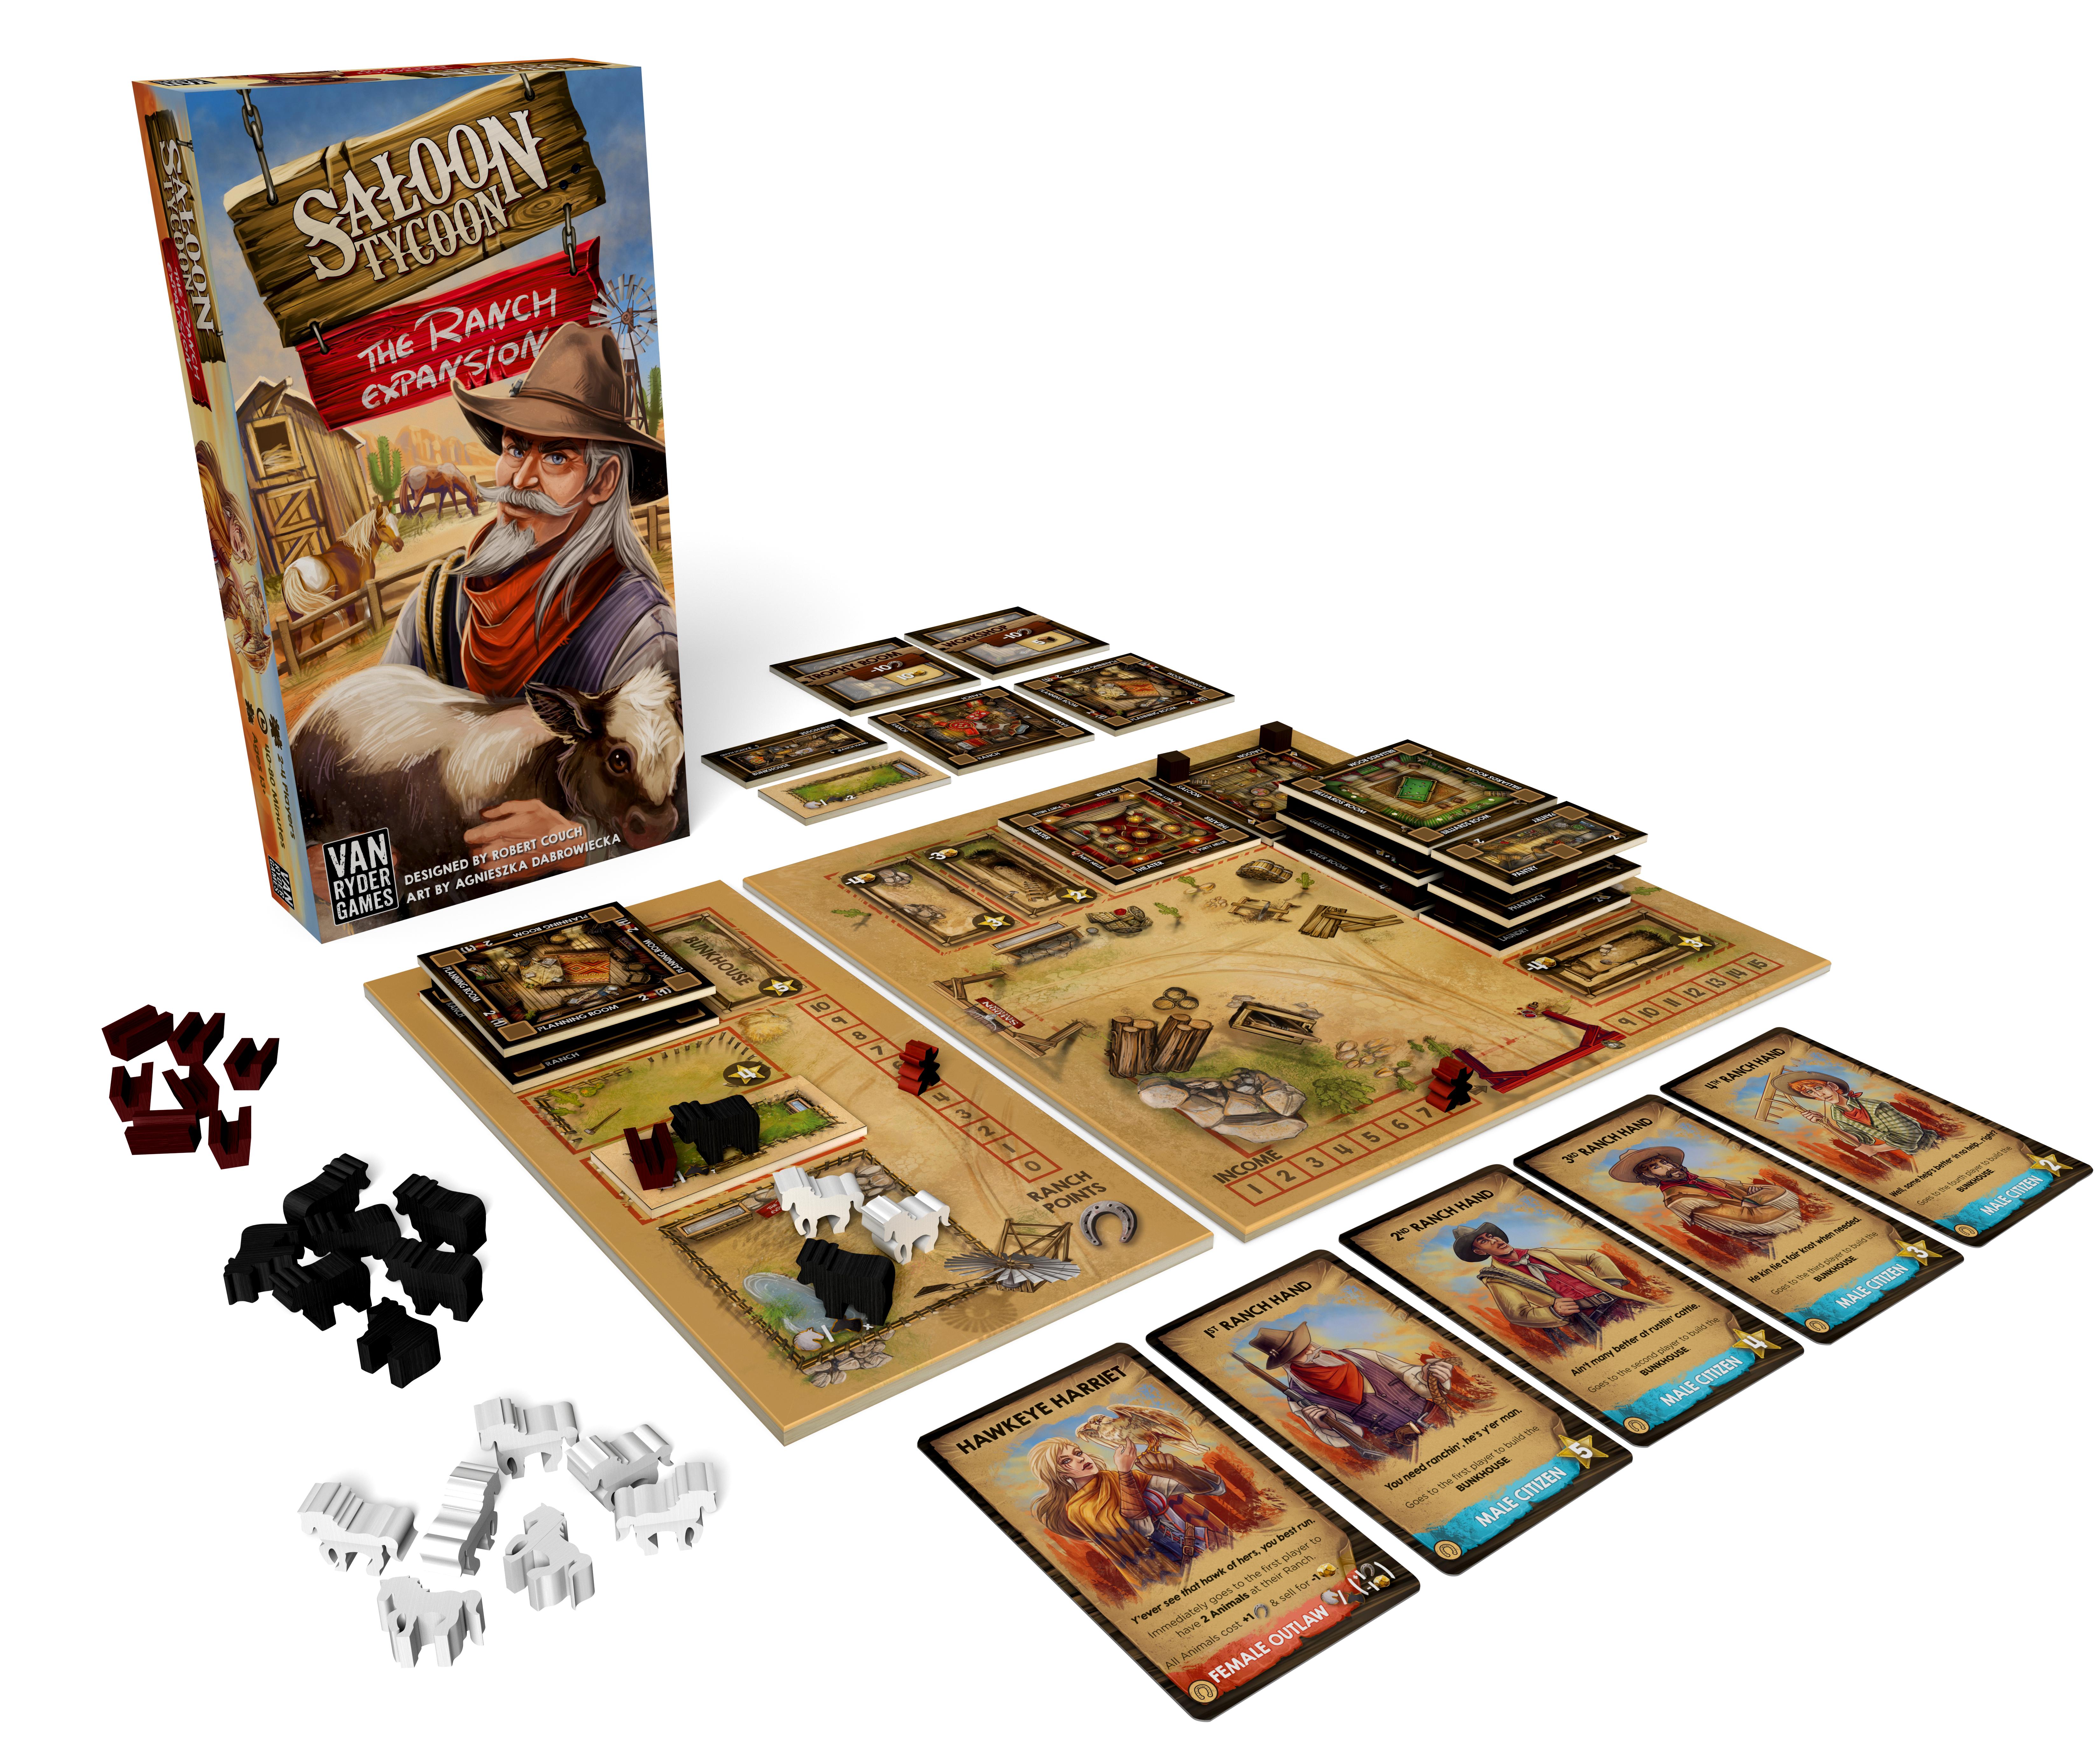 Saloon Tycoon: The Ranch Expansion auf Kickstarter